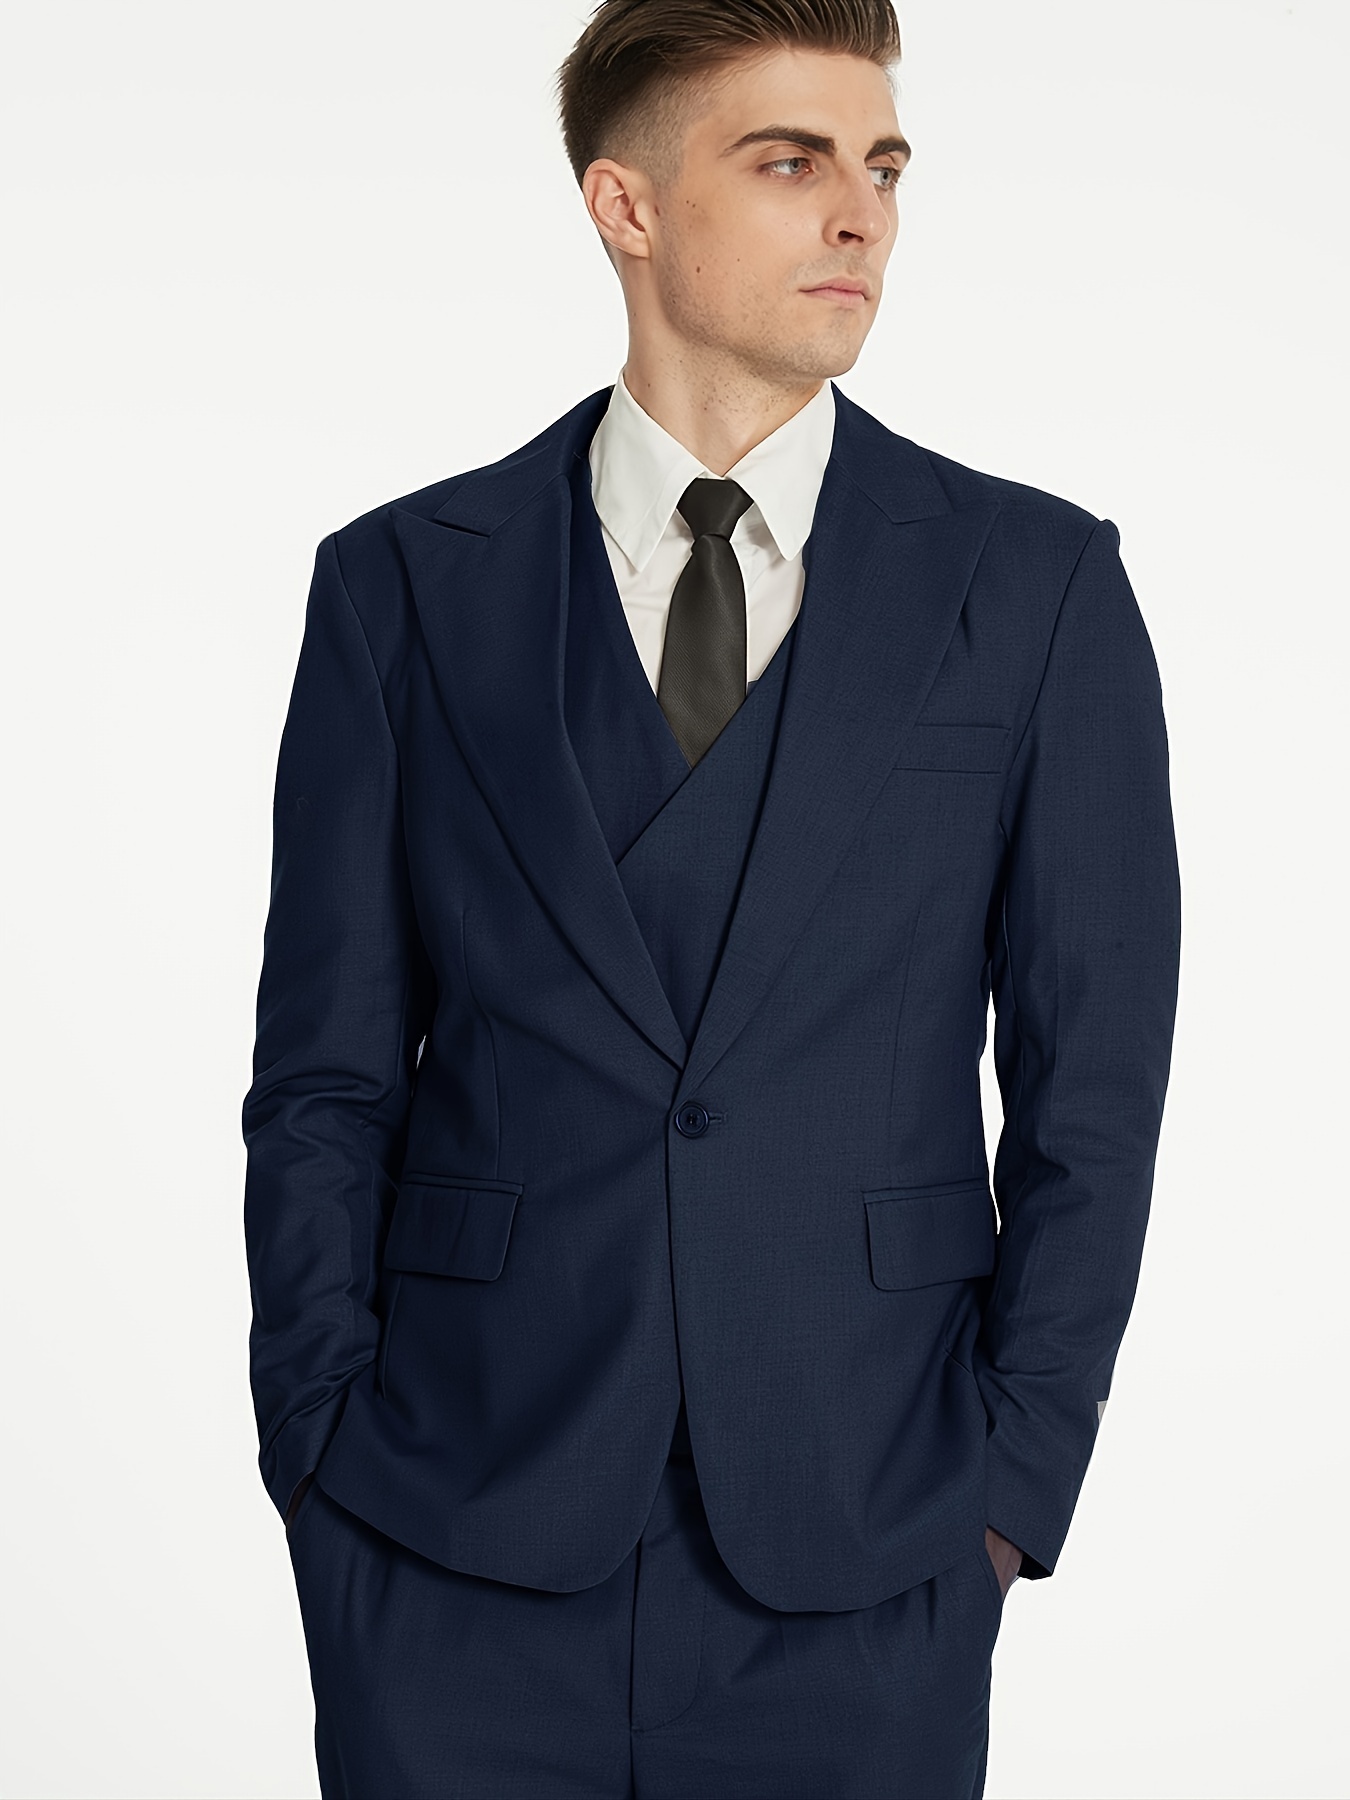 Men's 3 Piece Suit Slim Fit Suits One Button Blazer Vest Pants Formal  Business Wedding Prom Suits